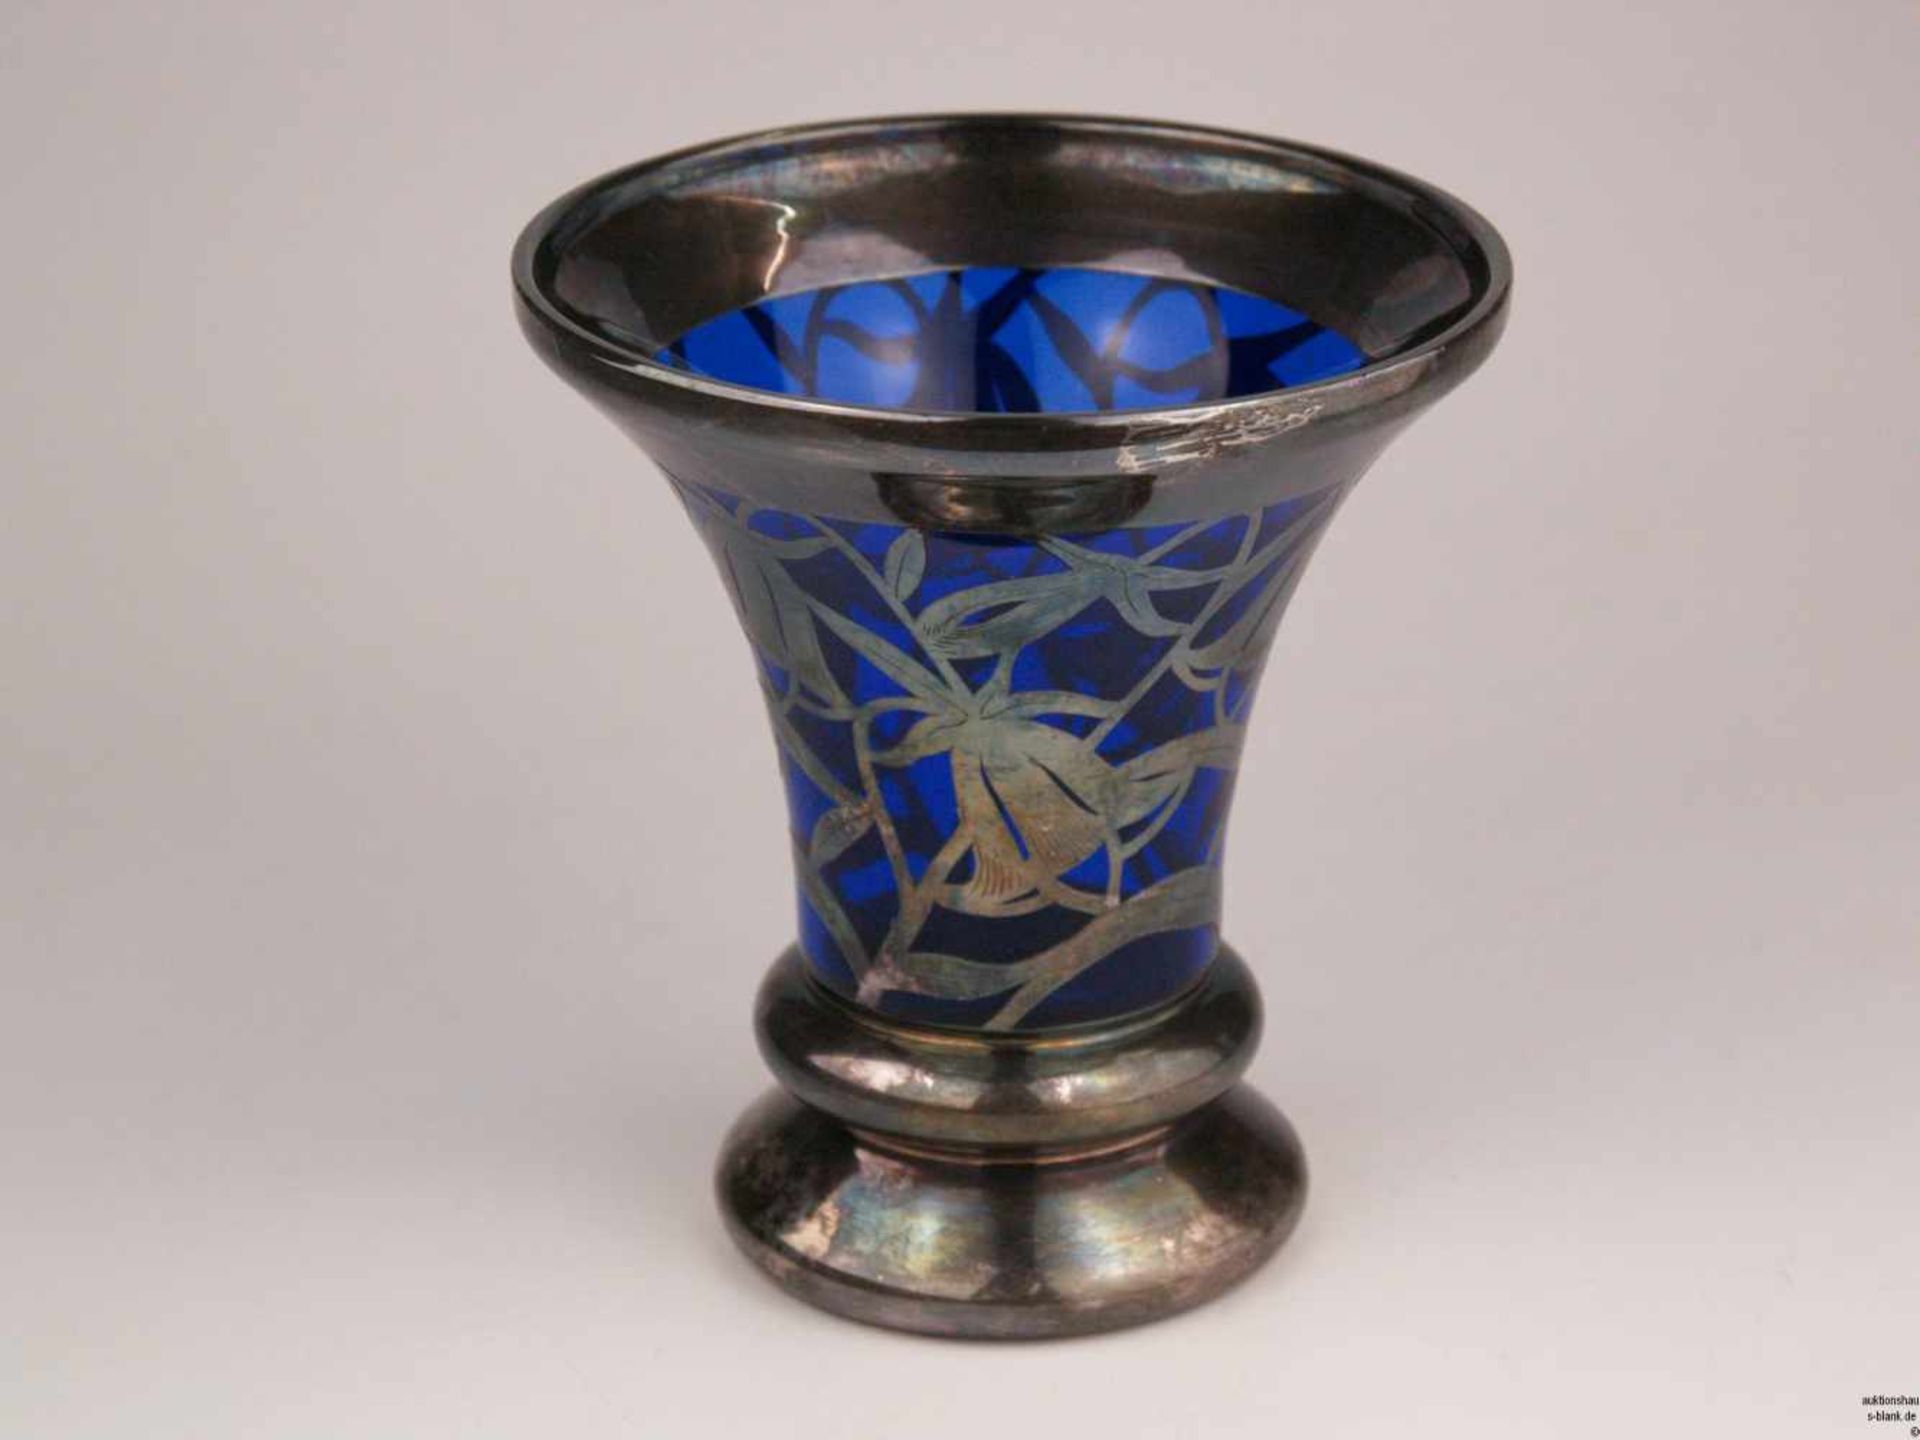 Jugendstilvase - runder Stand, konischer Korpus, kobaltblaues Glas, umlaufend Silberoverlay mit